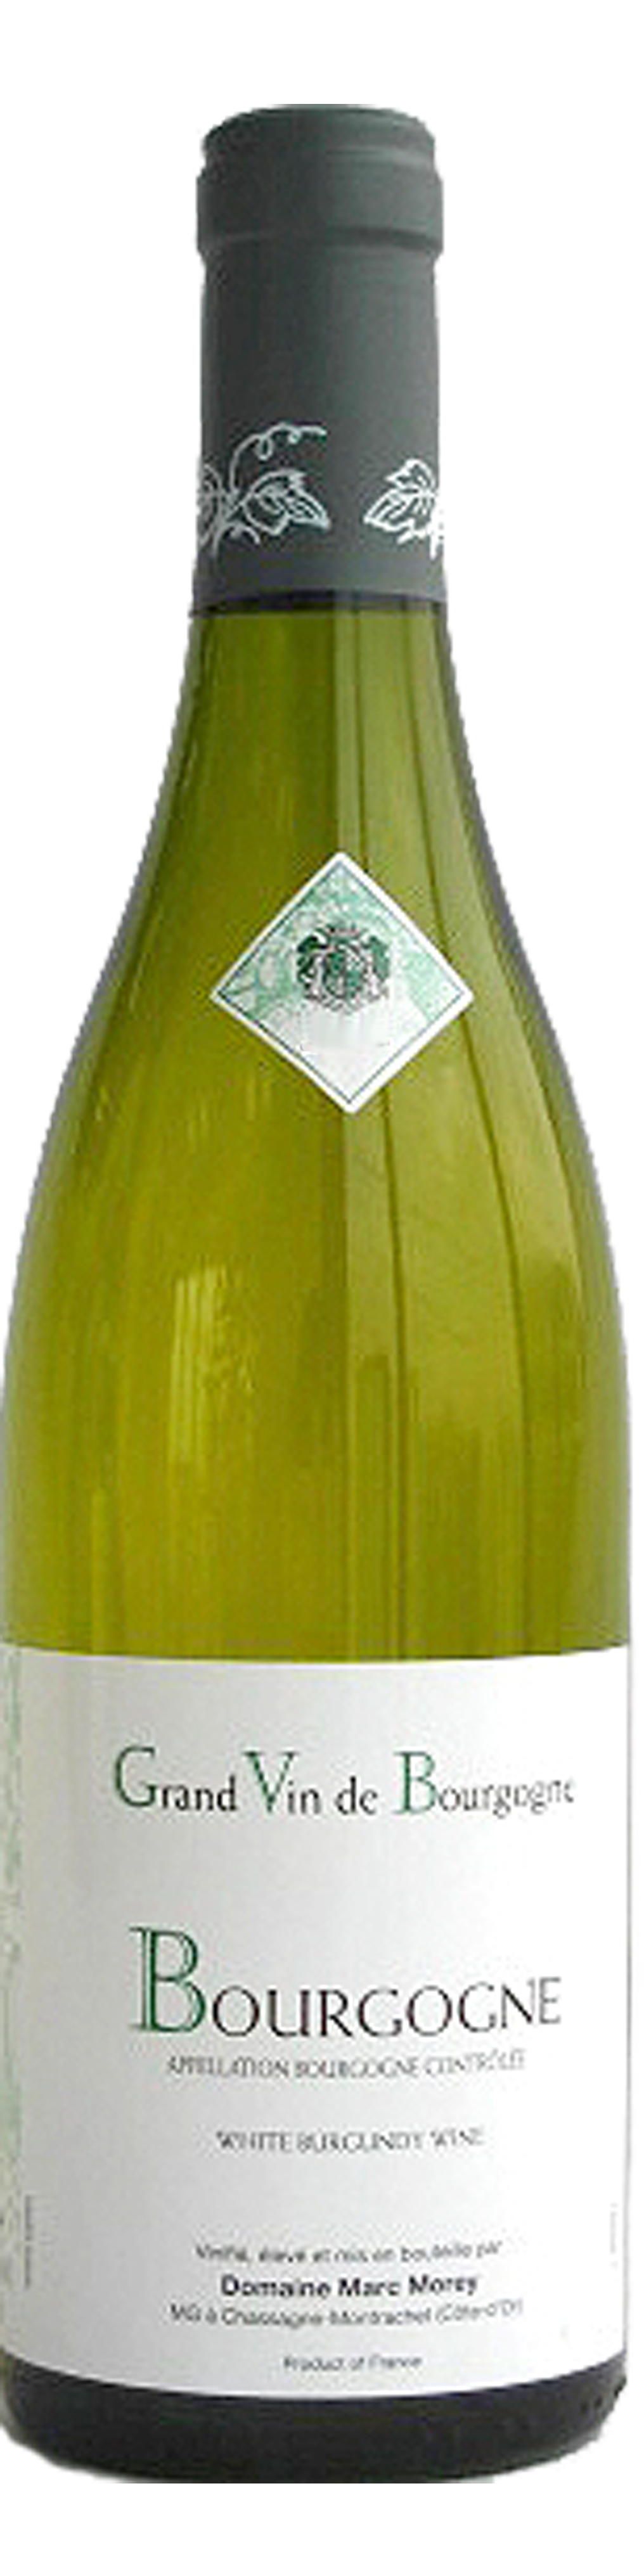 Image of product Bourgogne Blanc